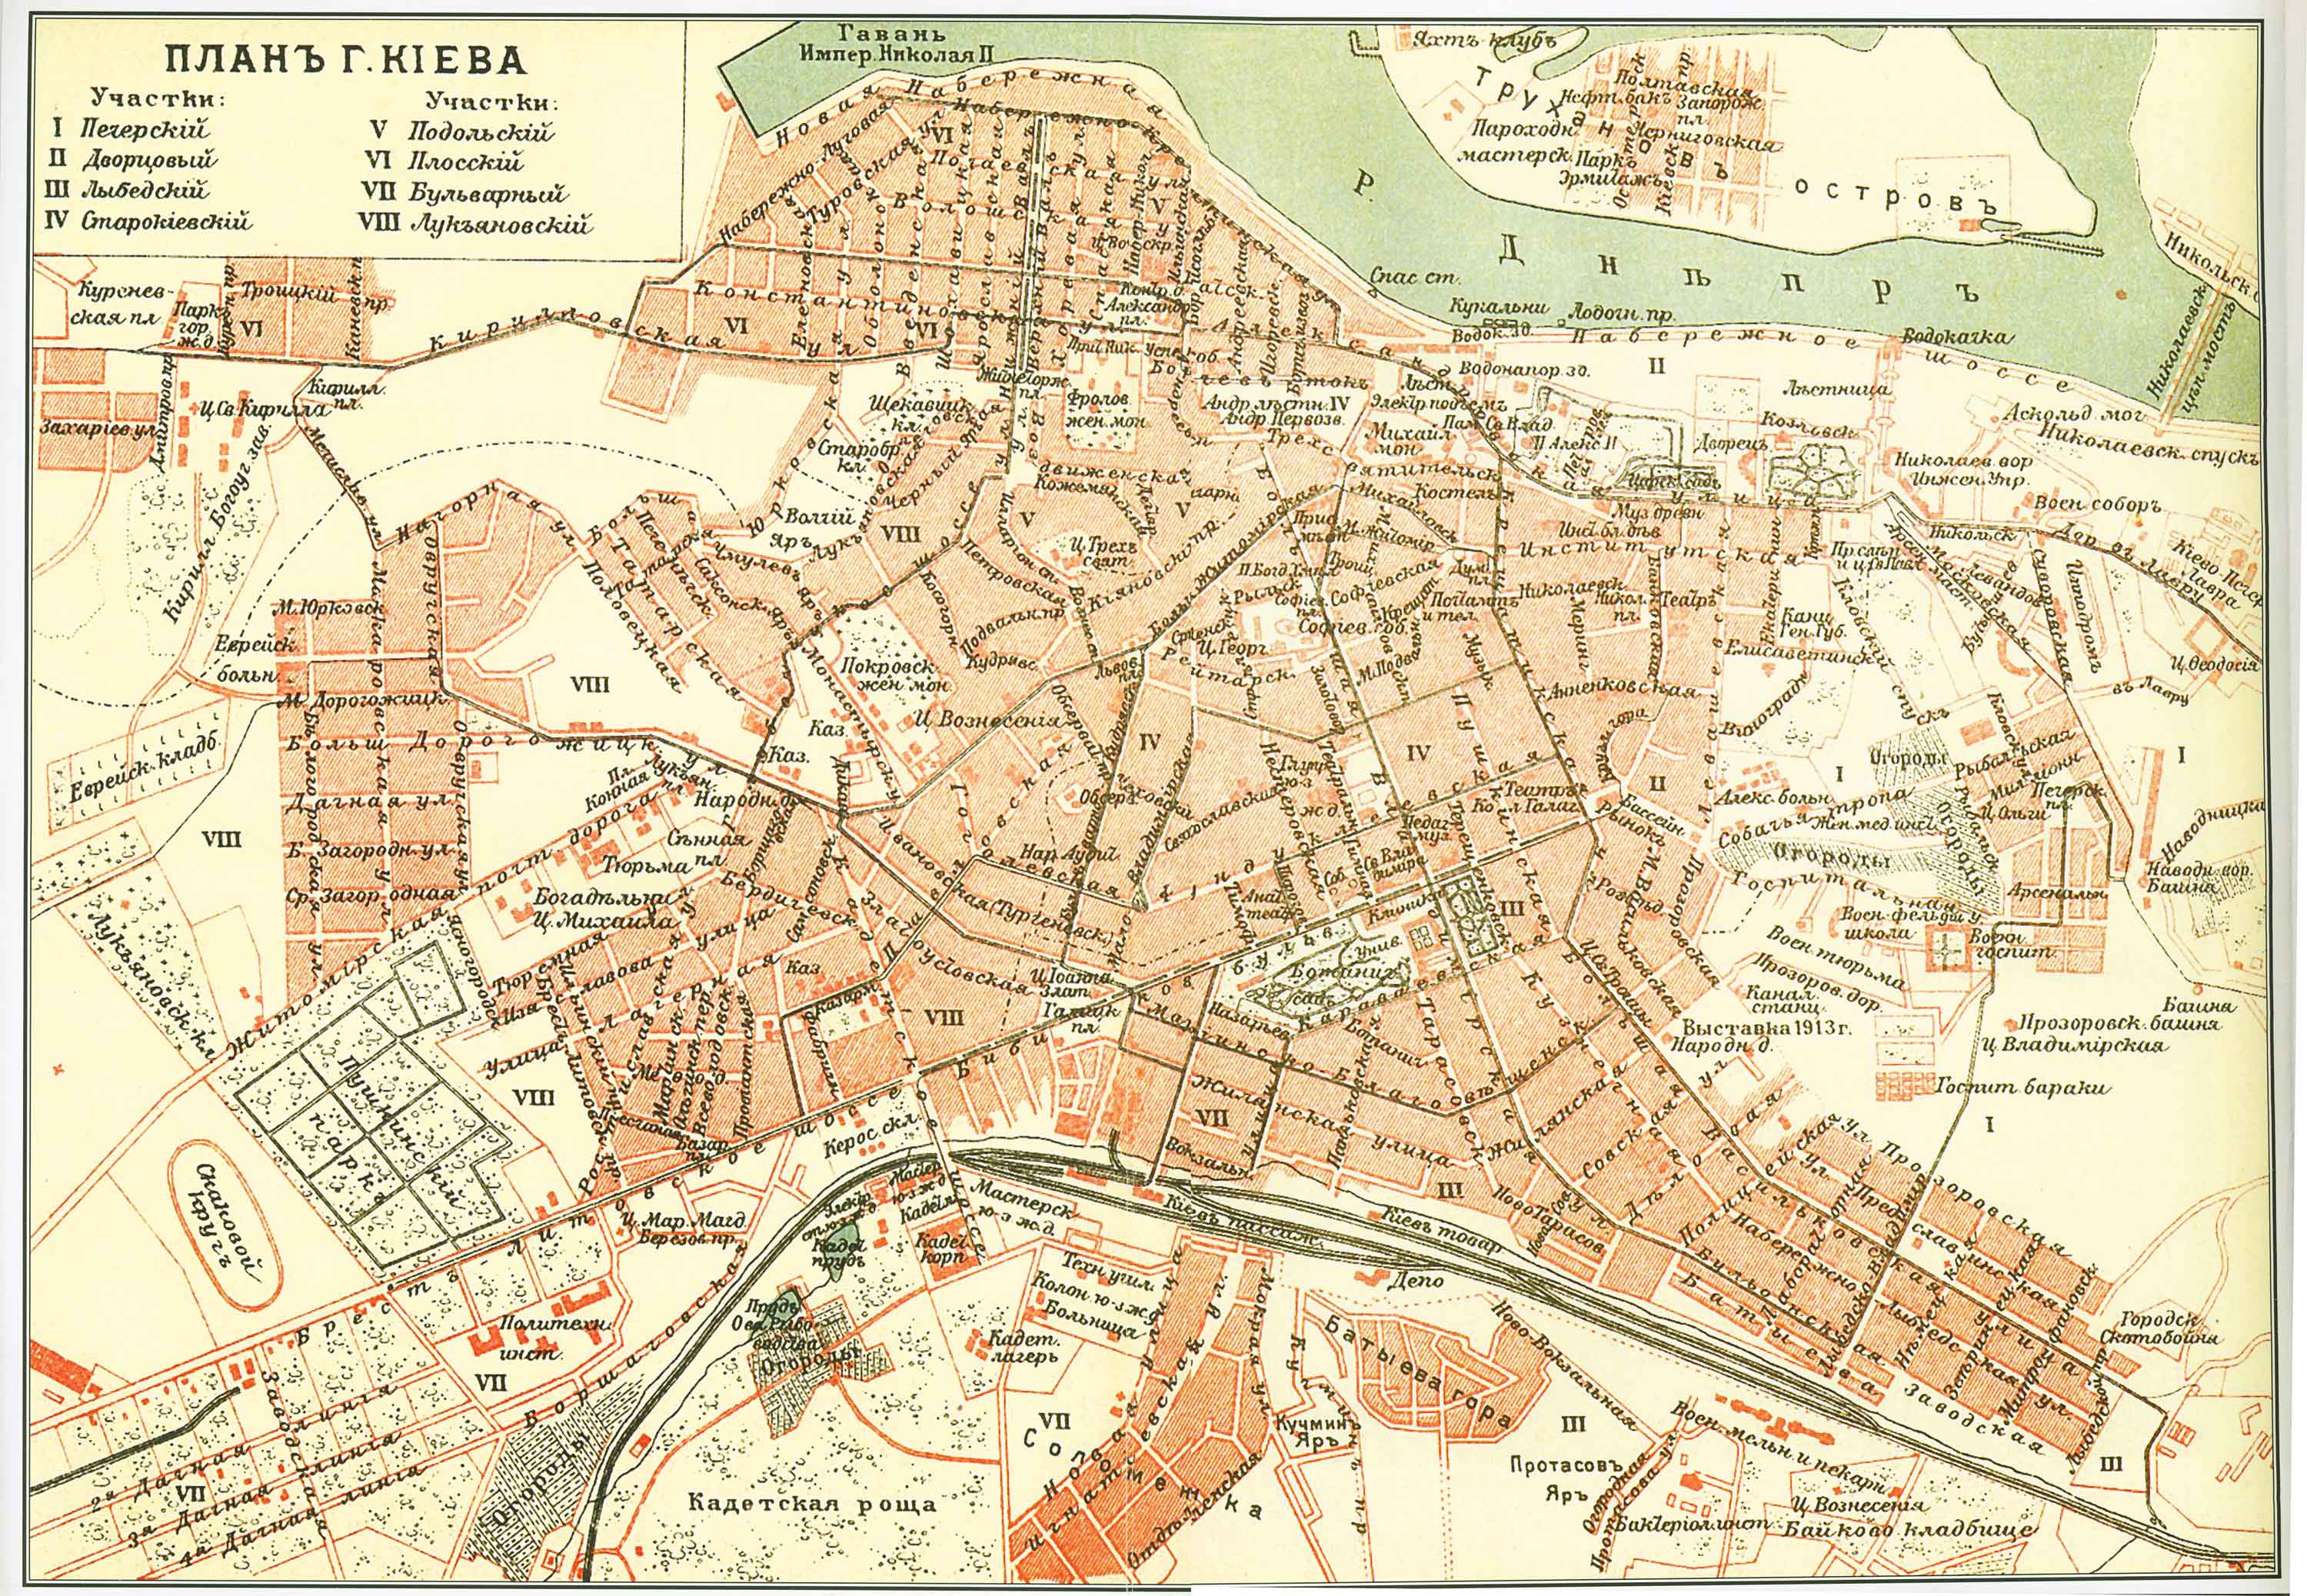 План Киева за 1901 г. Лукьяновка обозначена цифрой VIII.